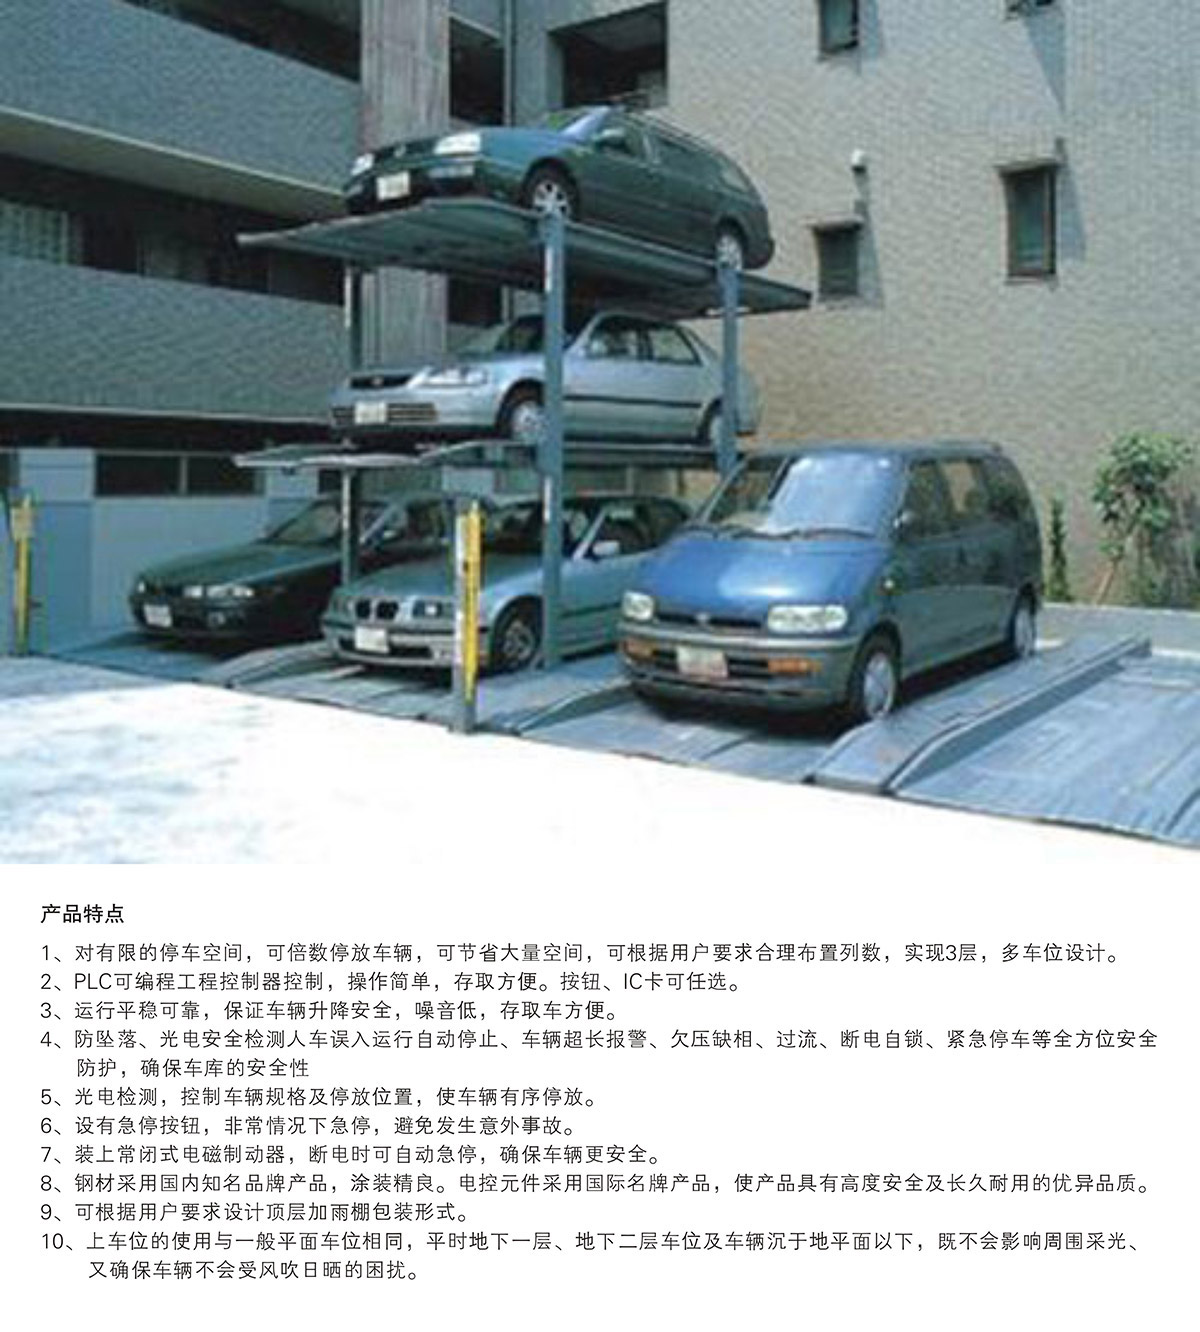 重庆PJS3-D2三层地坑简易升降立体停车设备产品特点.jpg